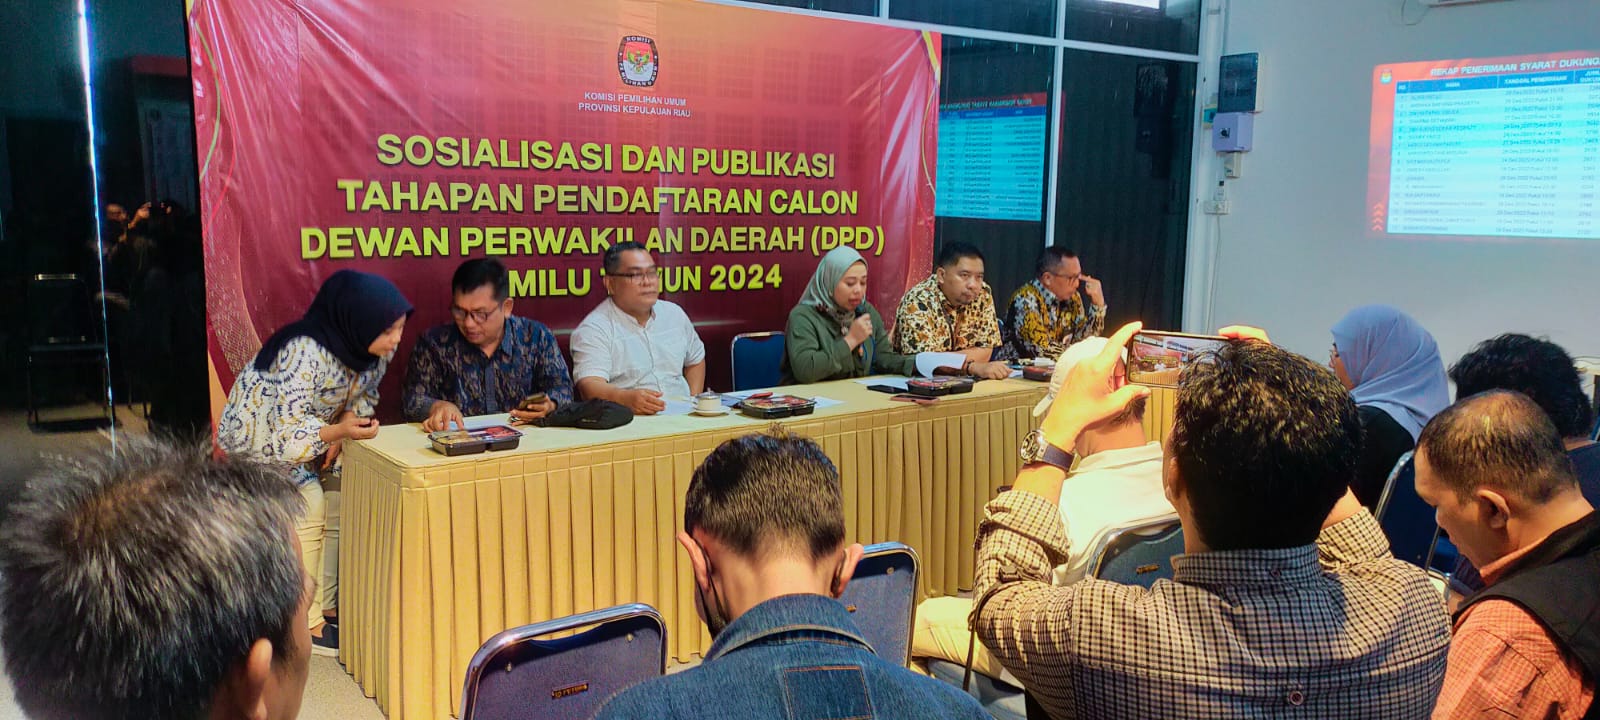 KPU Kepri saat sosialisasi dan publikasi tahapan pendaftaran calon DPD-RI Pemilu 2024, di Kantor KPU Kepri, Tanjungpinang, Jumat (30/12/2022). (Foto: Aji)